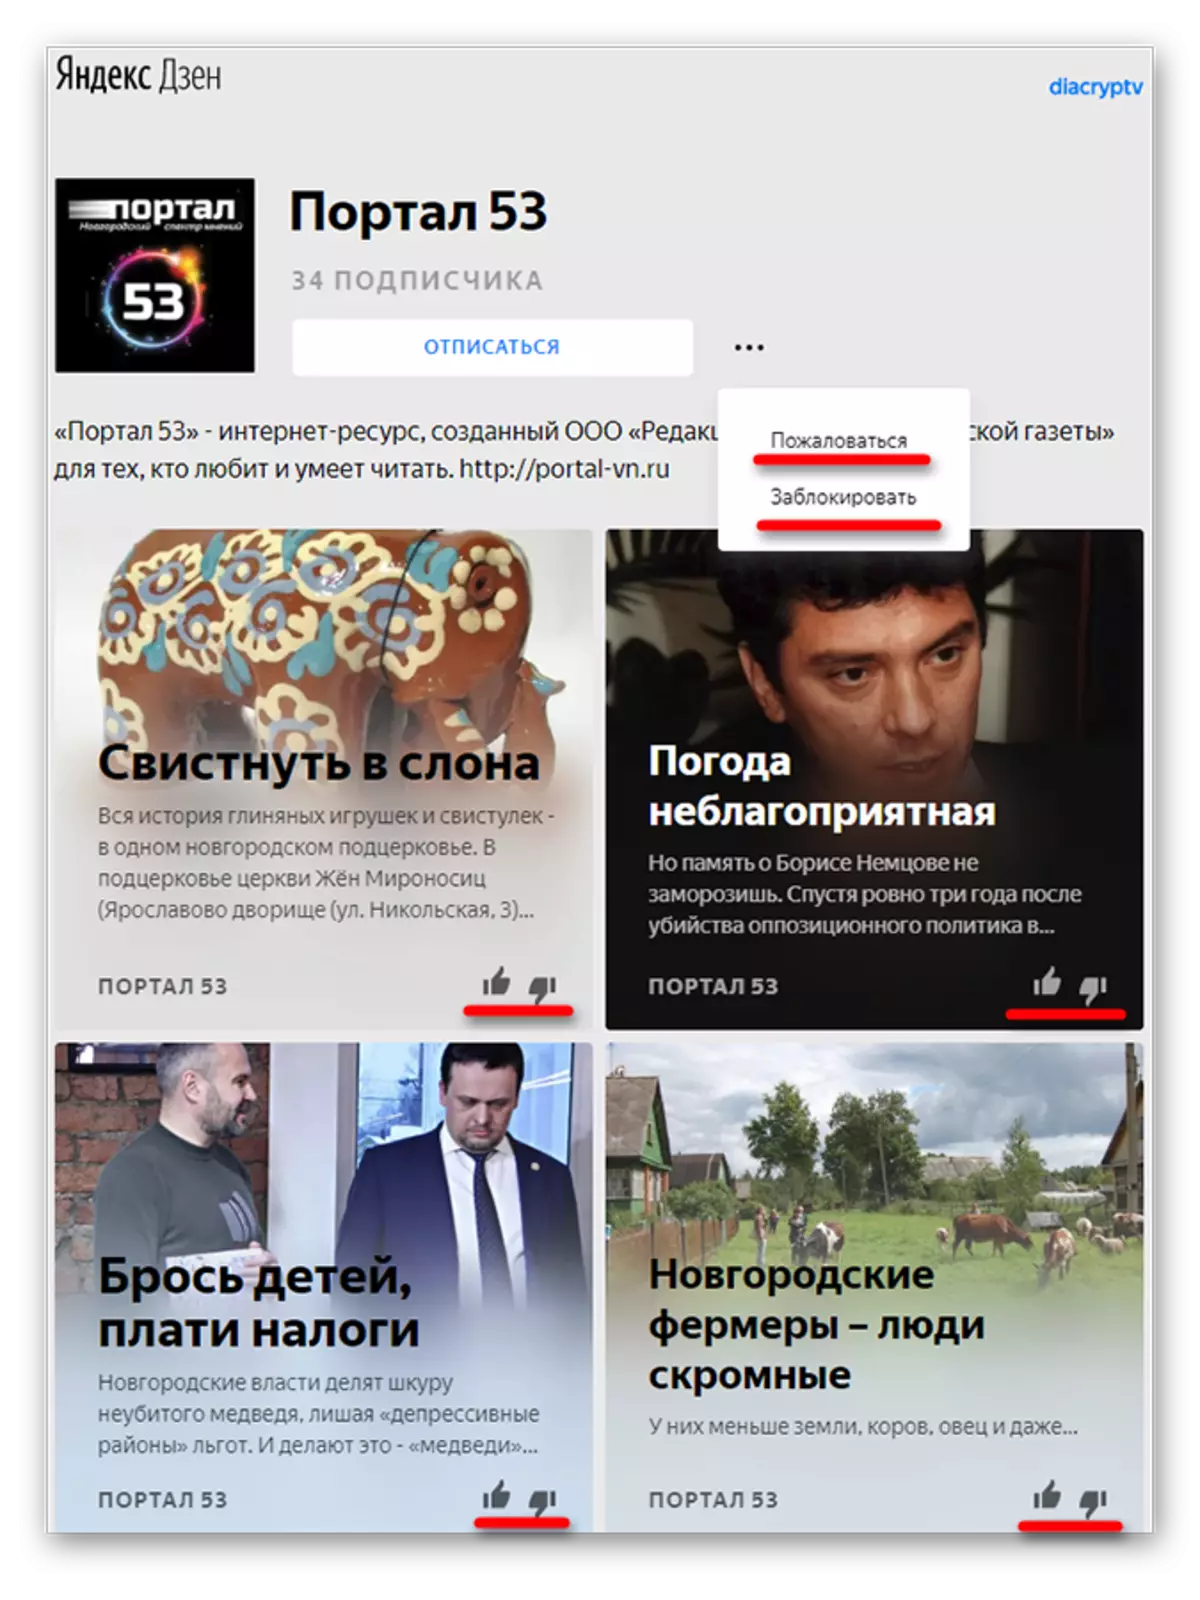 Yandex.dzen ішіндегі канал жаңалықтары